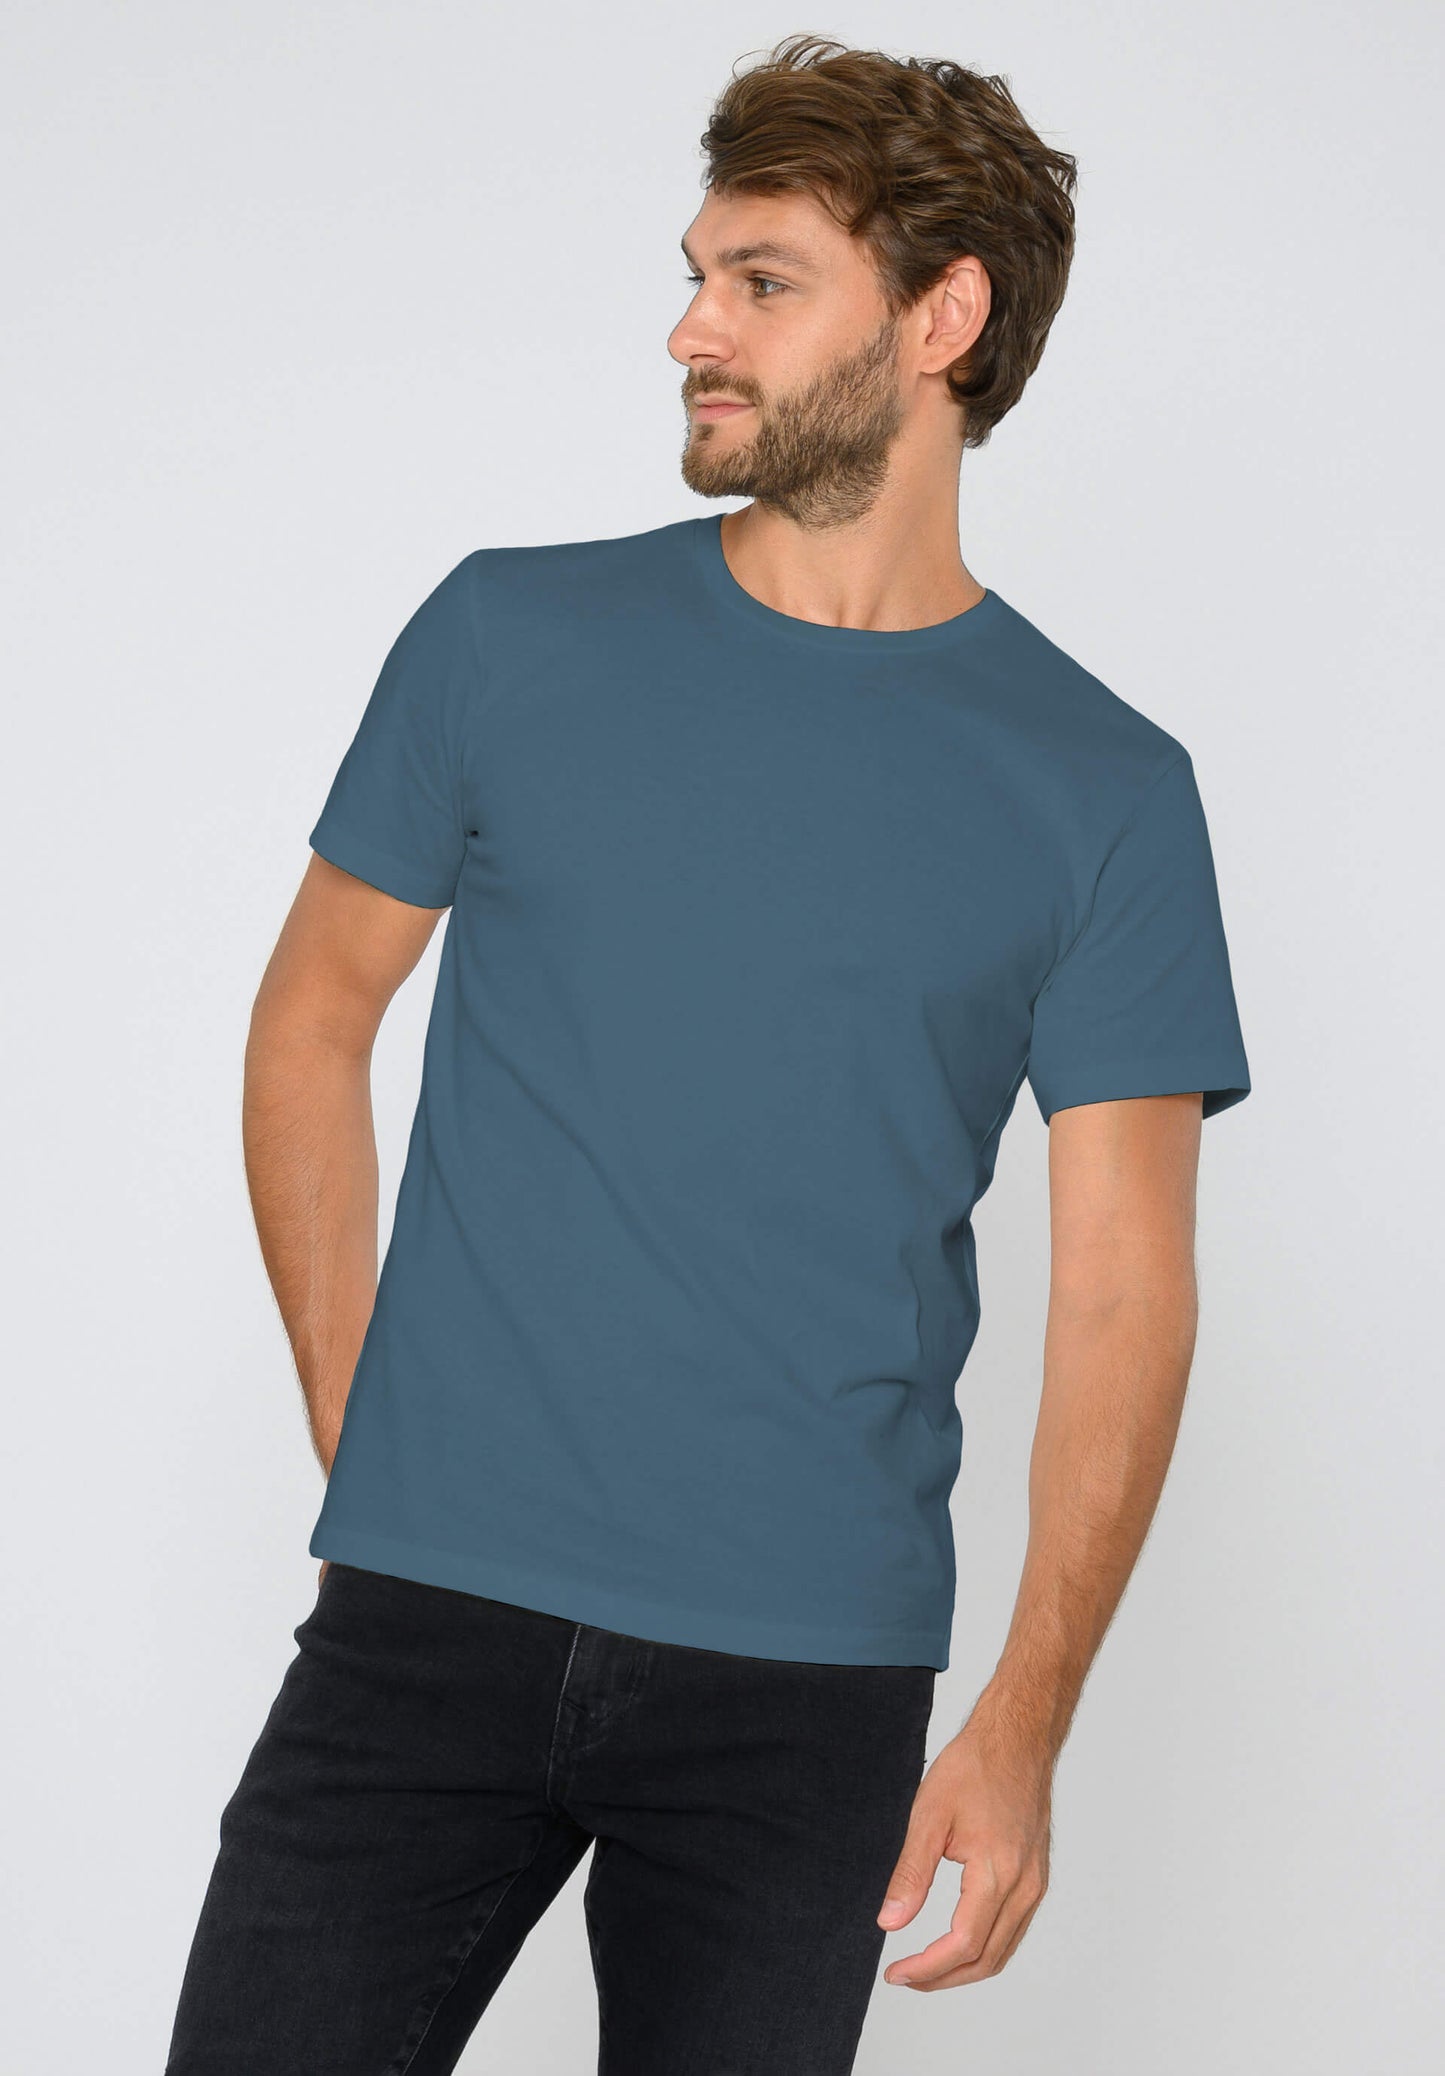 TT02 T-Shirt Sea Blue (GOTS)